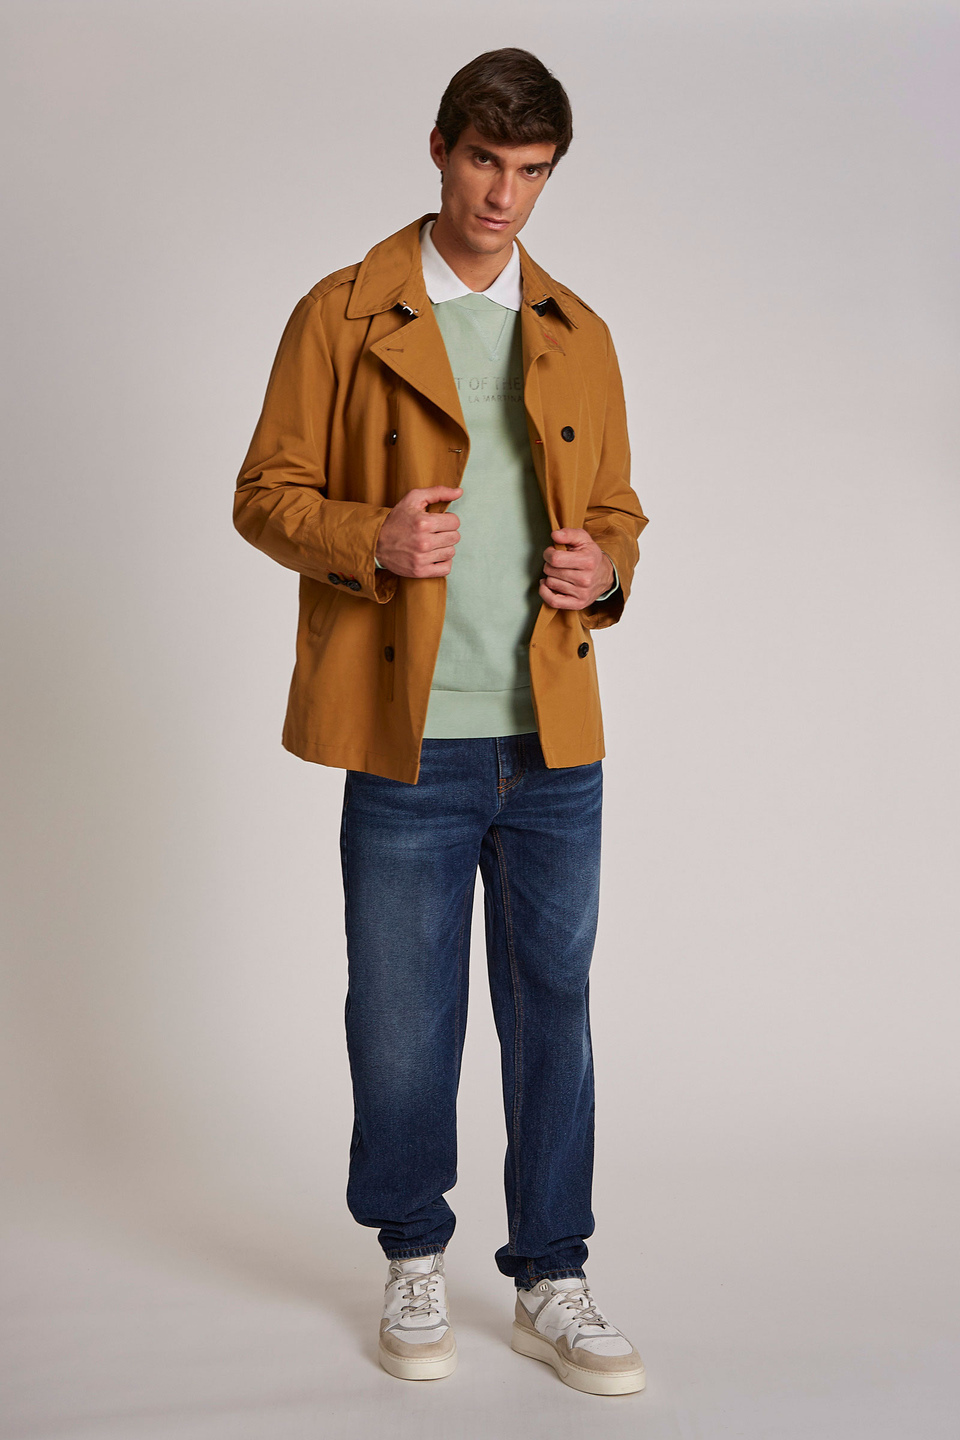 Polo homme 100% coton à manches courtes et coupe classique - La Martina - Official Online Shop